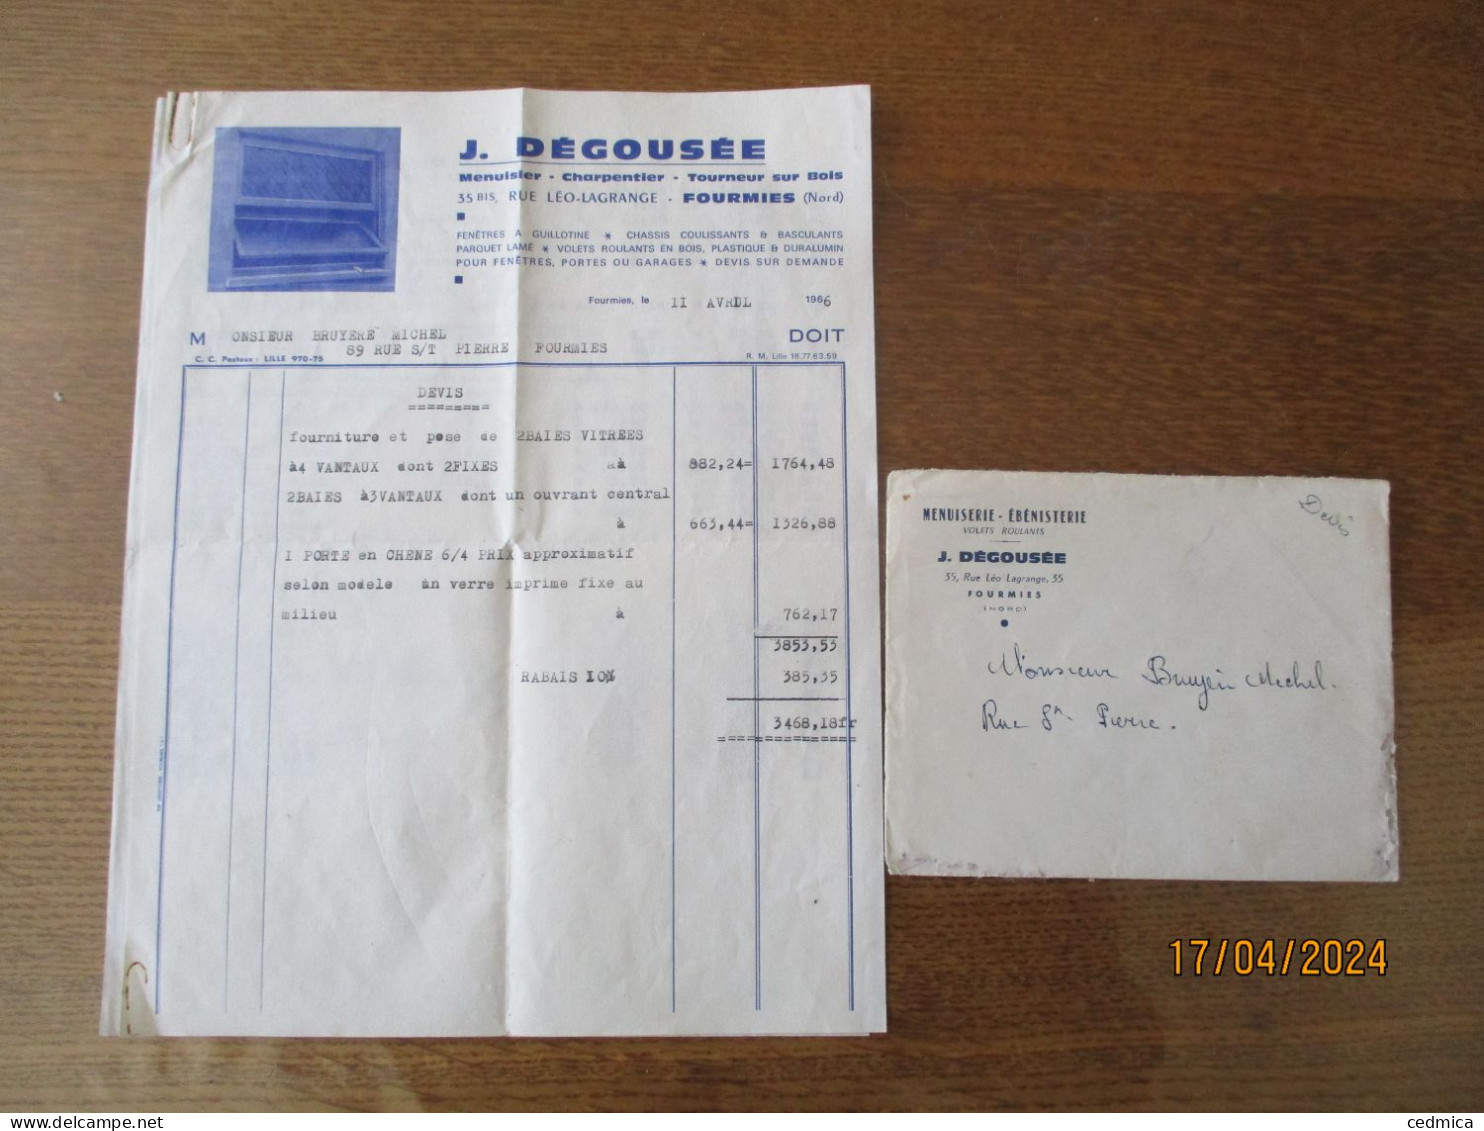 FOURMIES J. DEGOUSEE MENUISIER-CHARPENTIER 35 BIS RUE LEO-LAGRANGE FACTURE ET ENVELOPPE DU 11 AVRIL 1966 - 1950 - ...